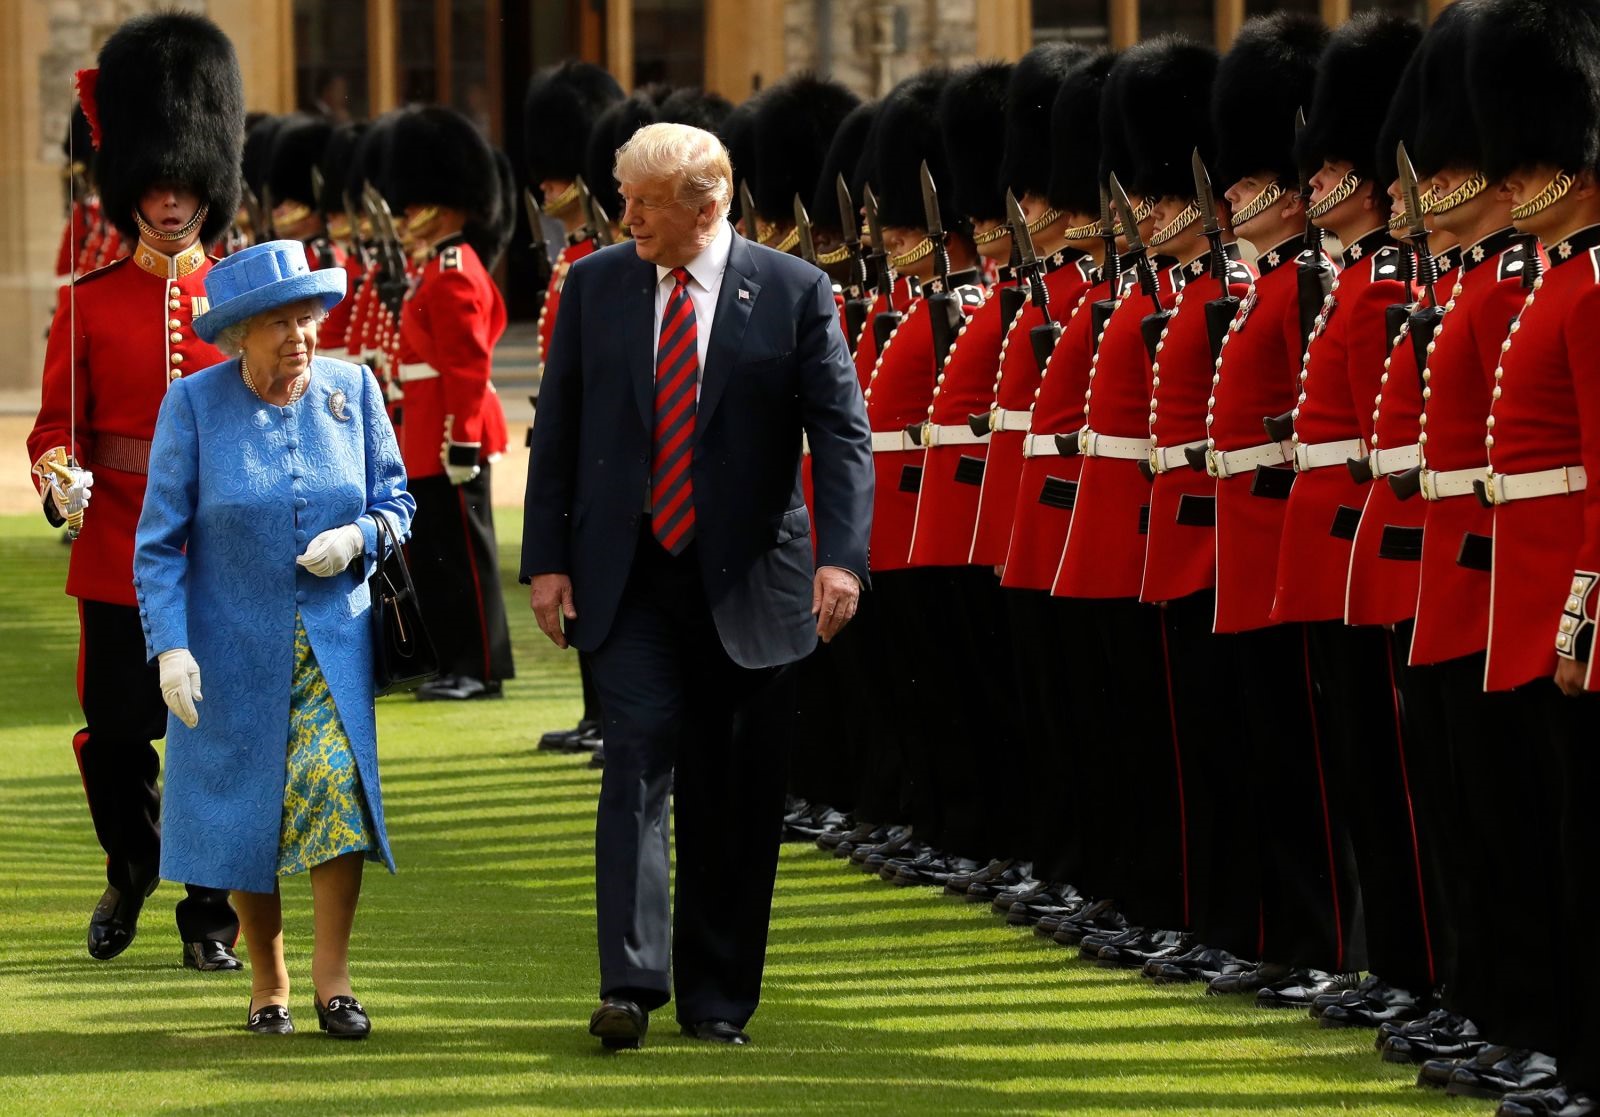 Nữ hoàng và Tổng thống Mỹ Donald Trump duyệt đội danh dự trong chuyến thăm của ông Trump đến Lâu đài Windsor vào tháng 7 năm 2018. Ảnh: Getty